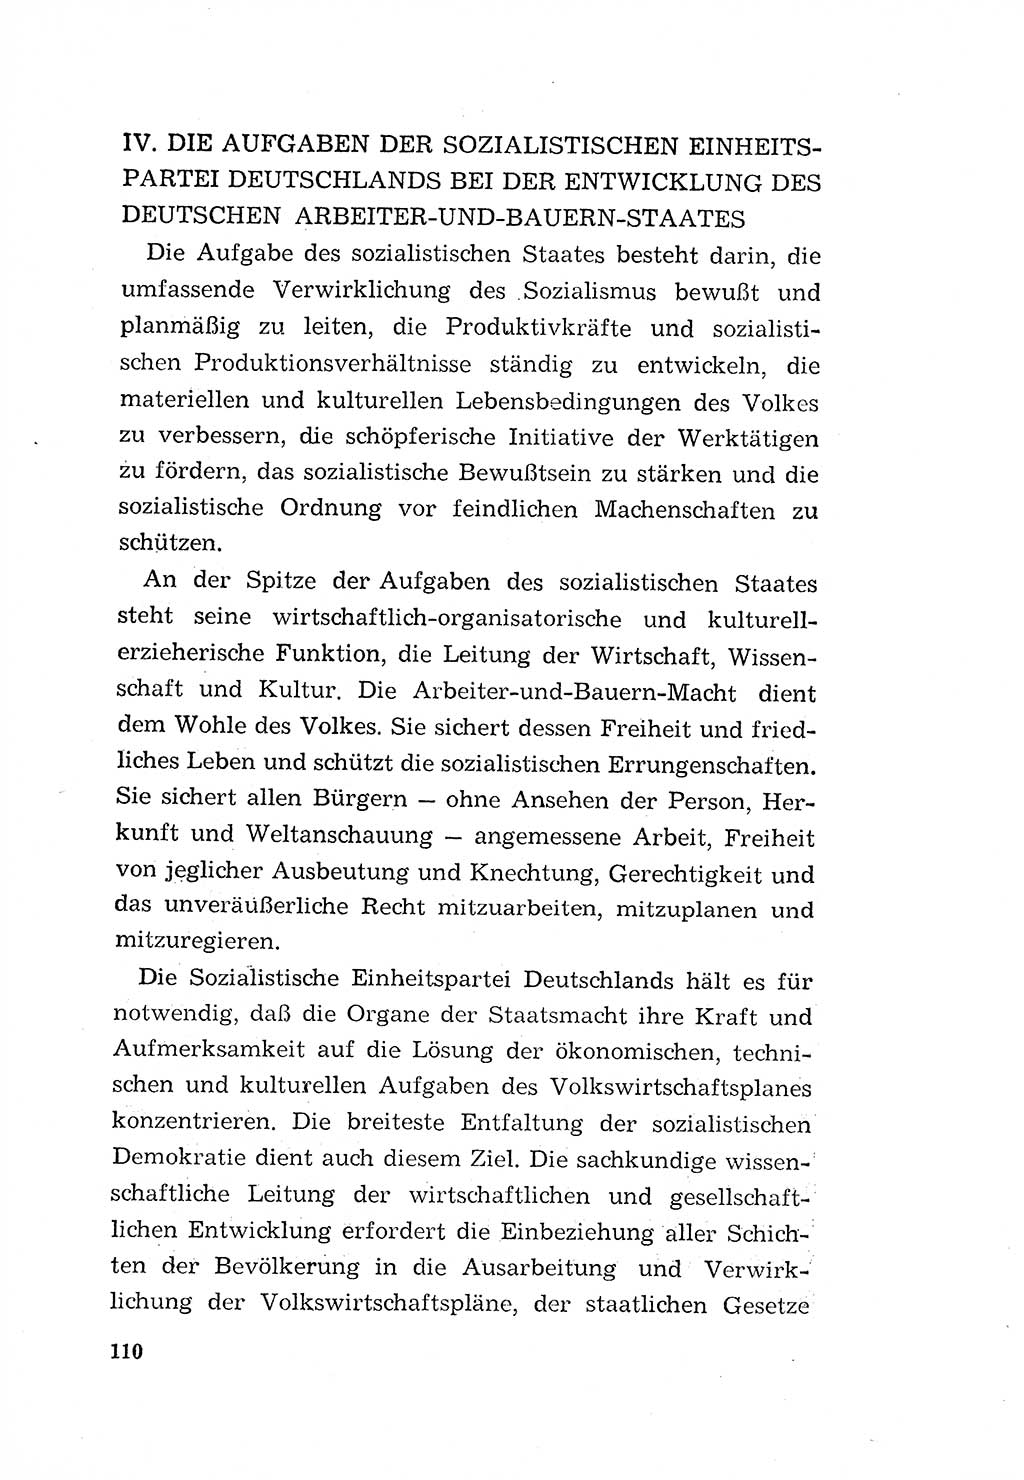 Programm der Sozialistischen Einheitspartei Deutschlands (SED) [Deutsche Demokratische Republik (DDR)] 1963, Seite 110 (Progr. SED DDR 1963, S. 110)